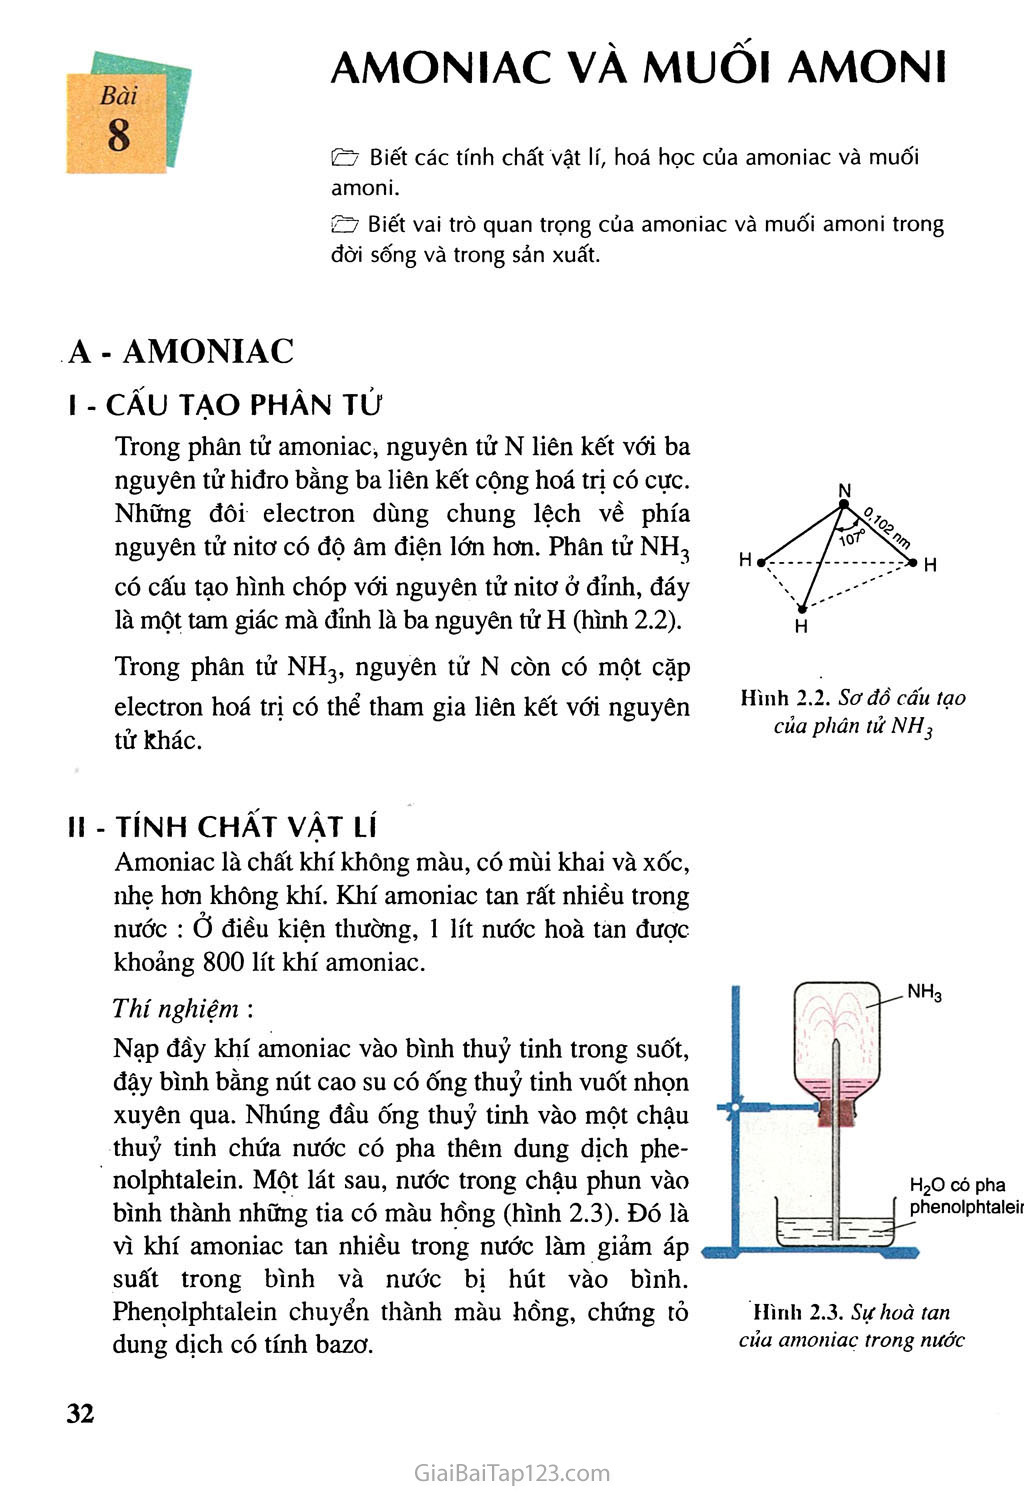 Bài 8: Amoniac và muối amoni trang 1